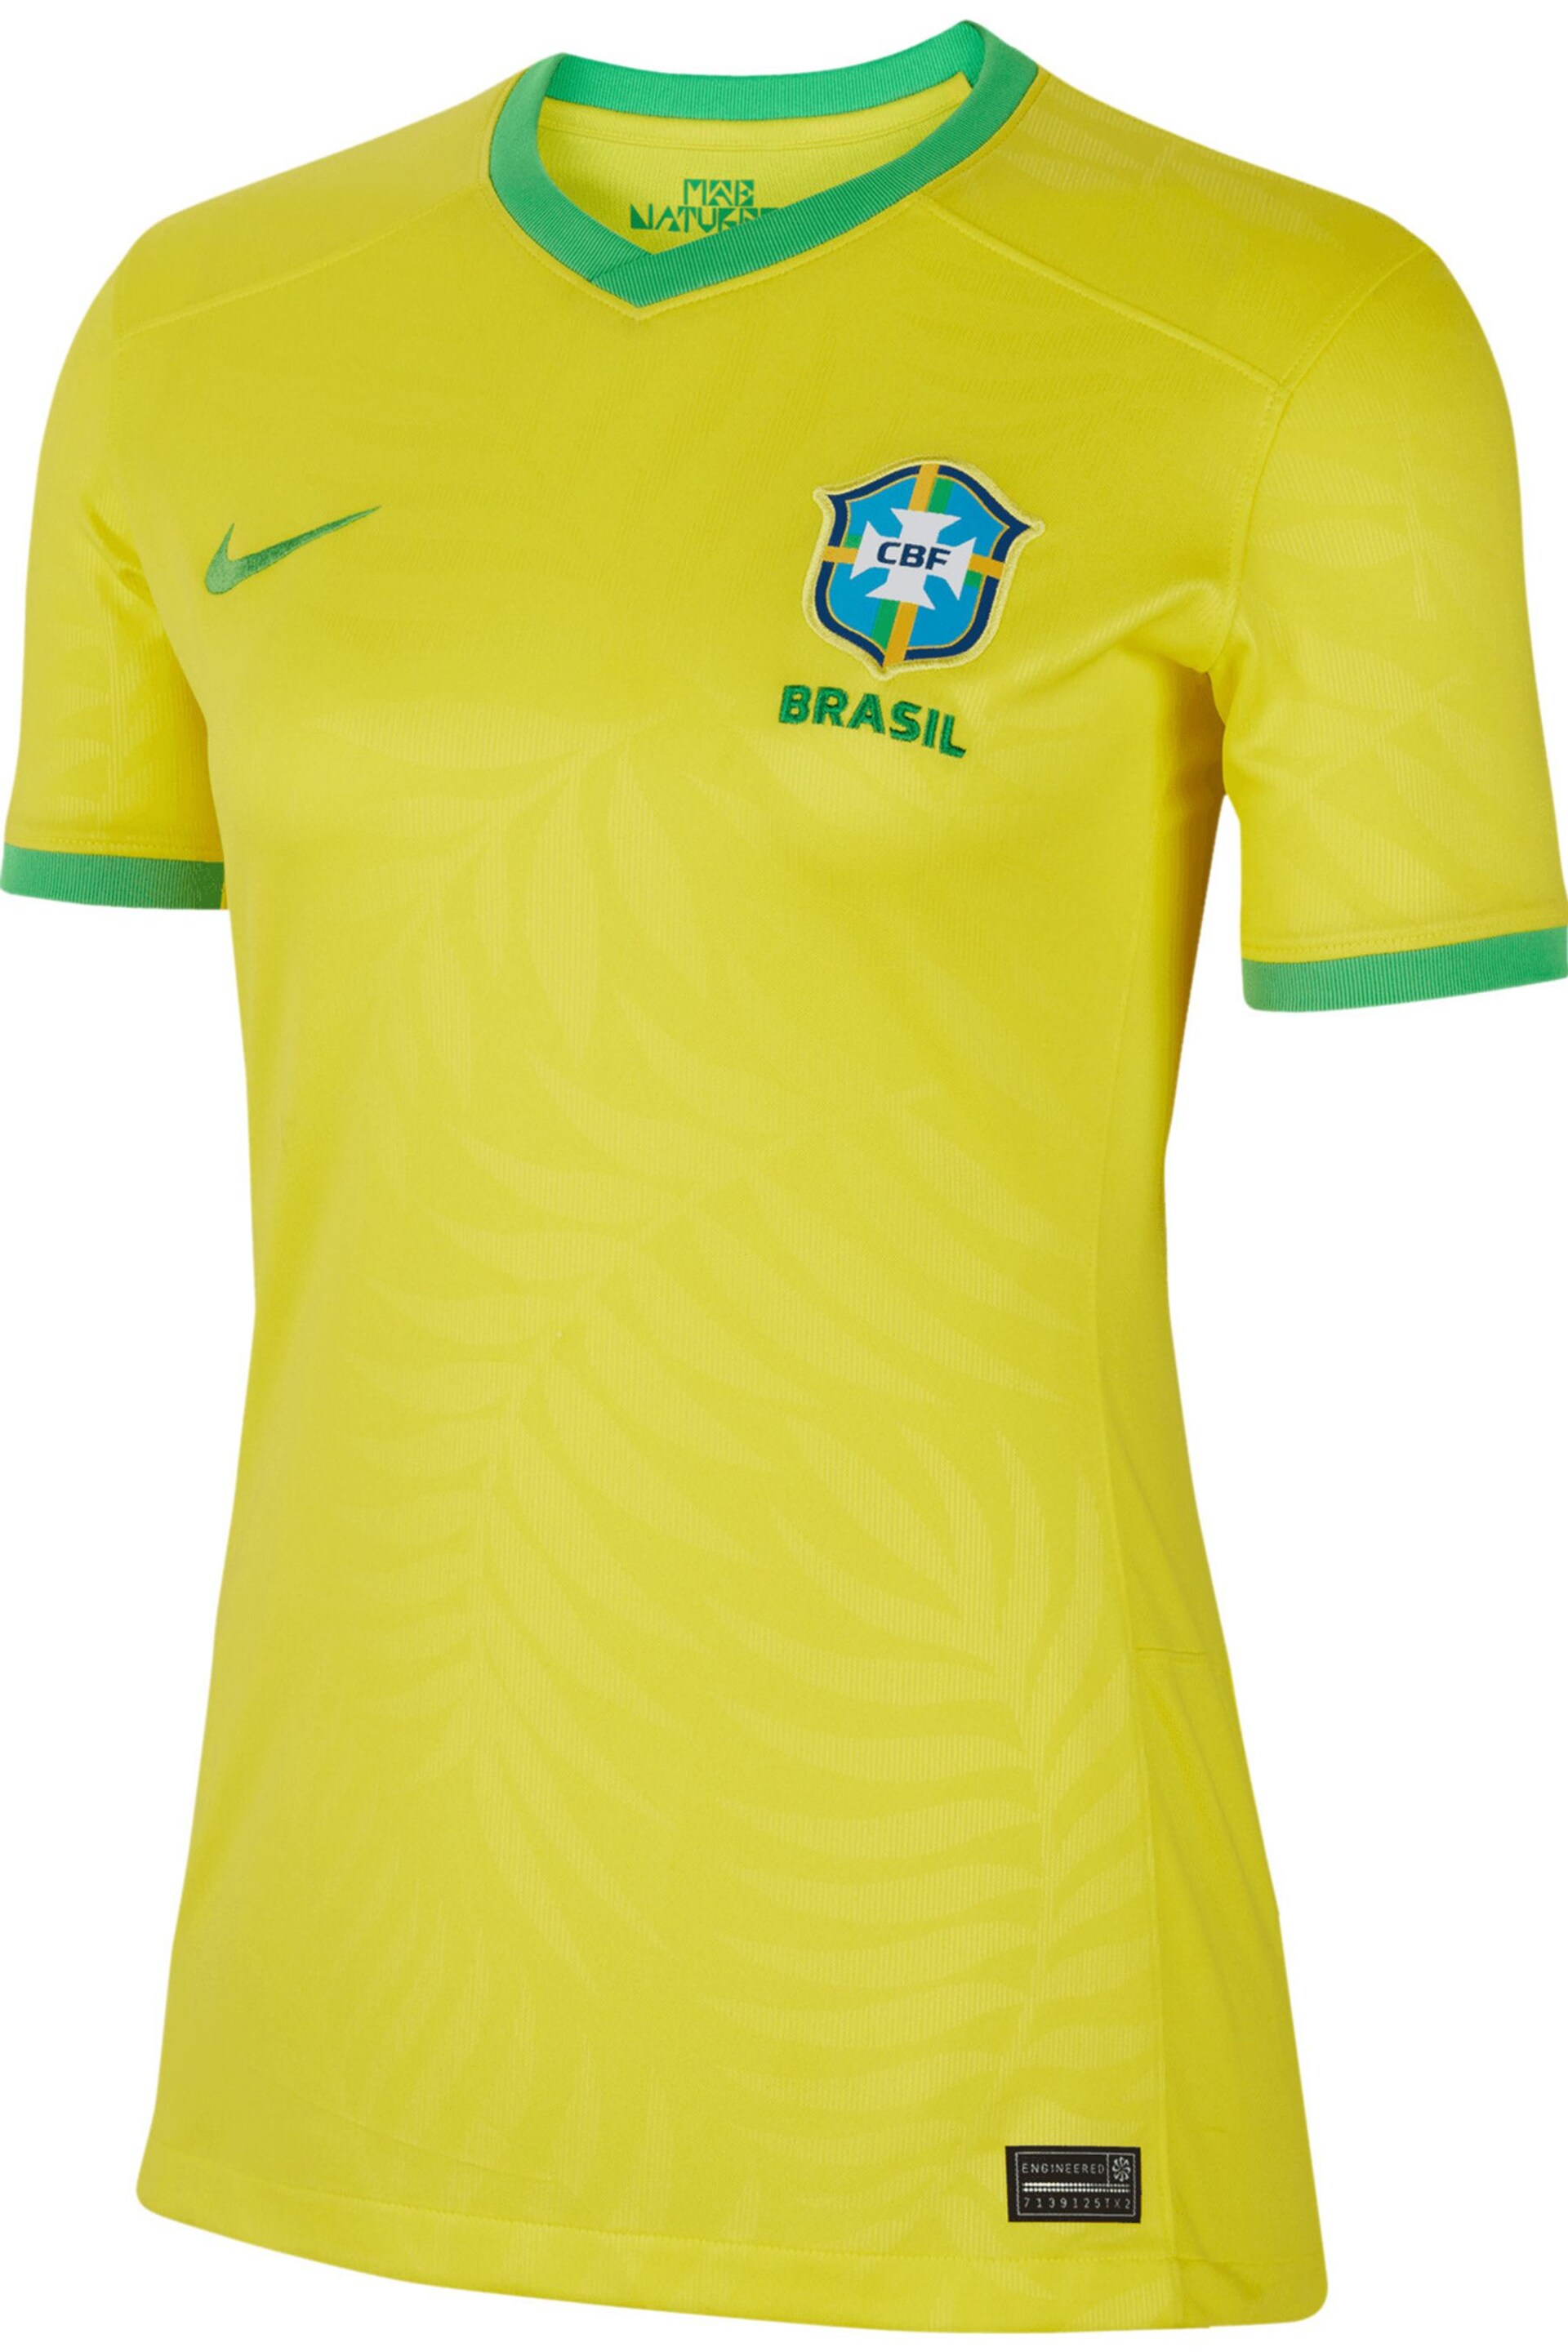 Nike Yellow Brazil Home Stadium Shirt - Image 2 of 4